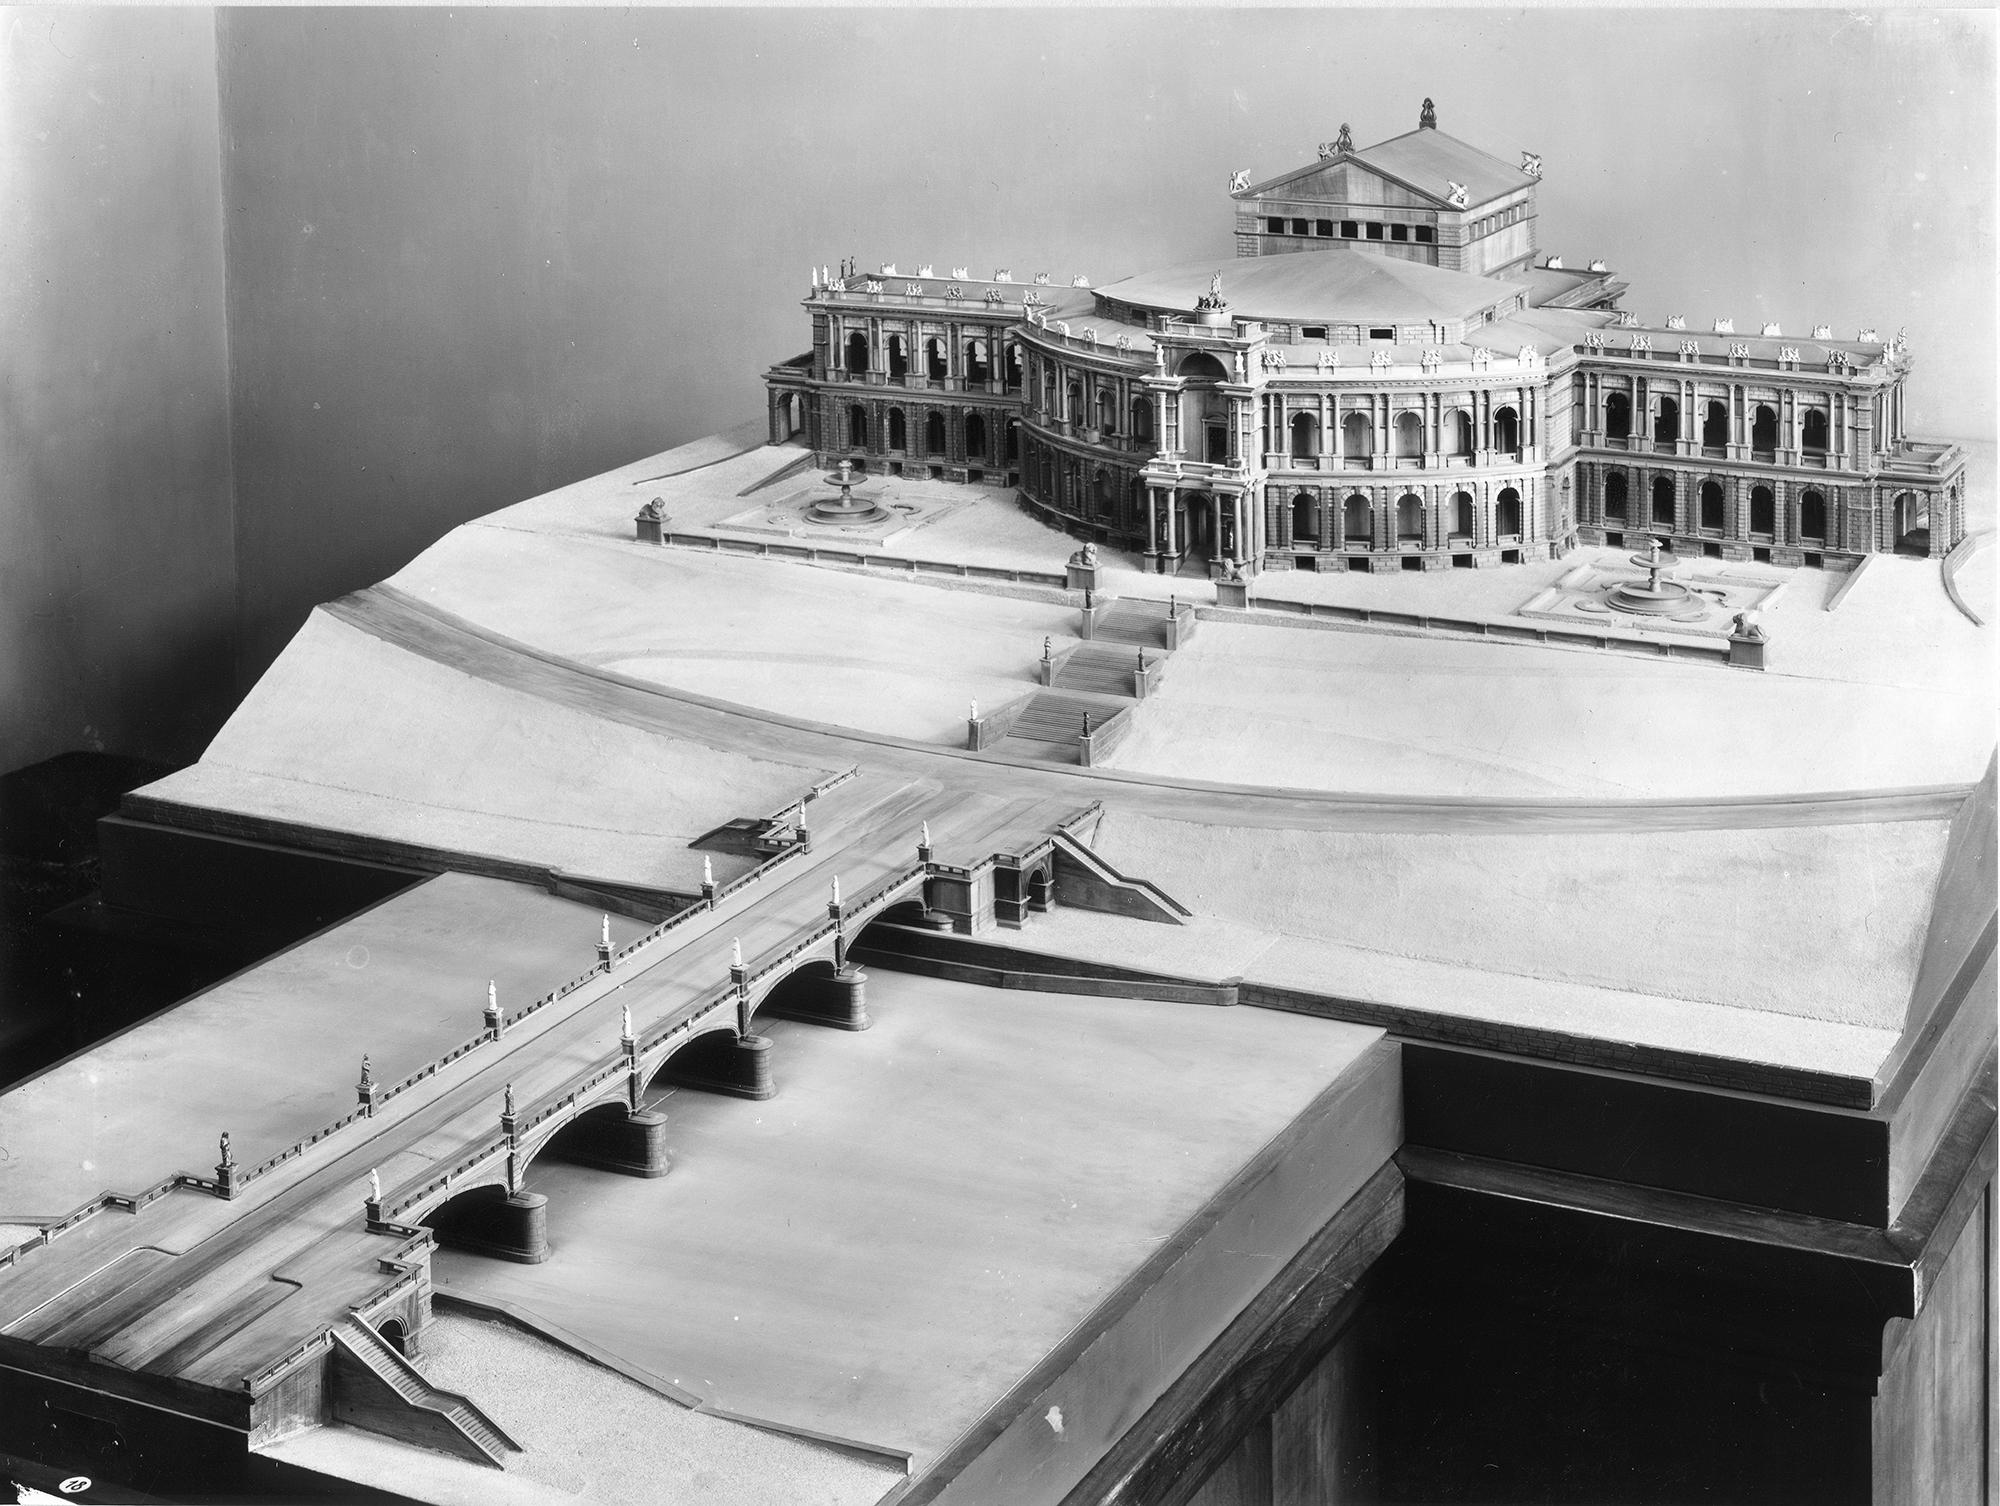 Der Prachtbau ist in exponierter Lage als monumentaler Abschluss der durch einen Brückenneubau verlängerten Brienner Straße gedacht, was dieses Modell des geplanten Richard-Wagner-Festspielhauses veranschaulicht.